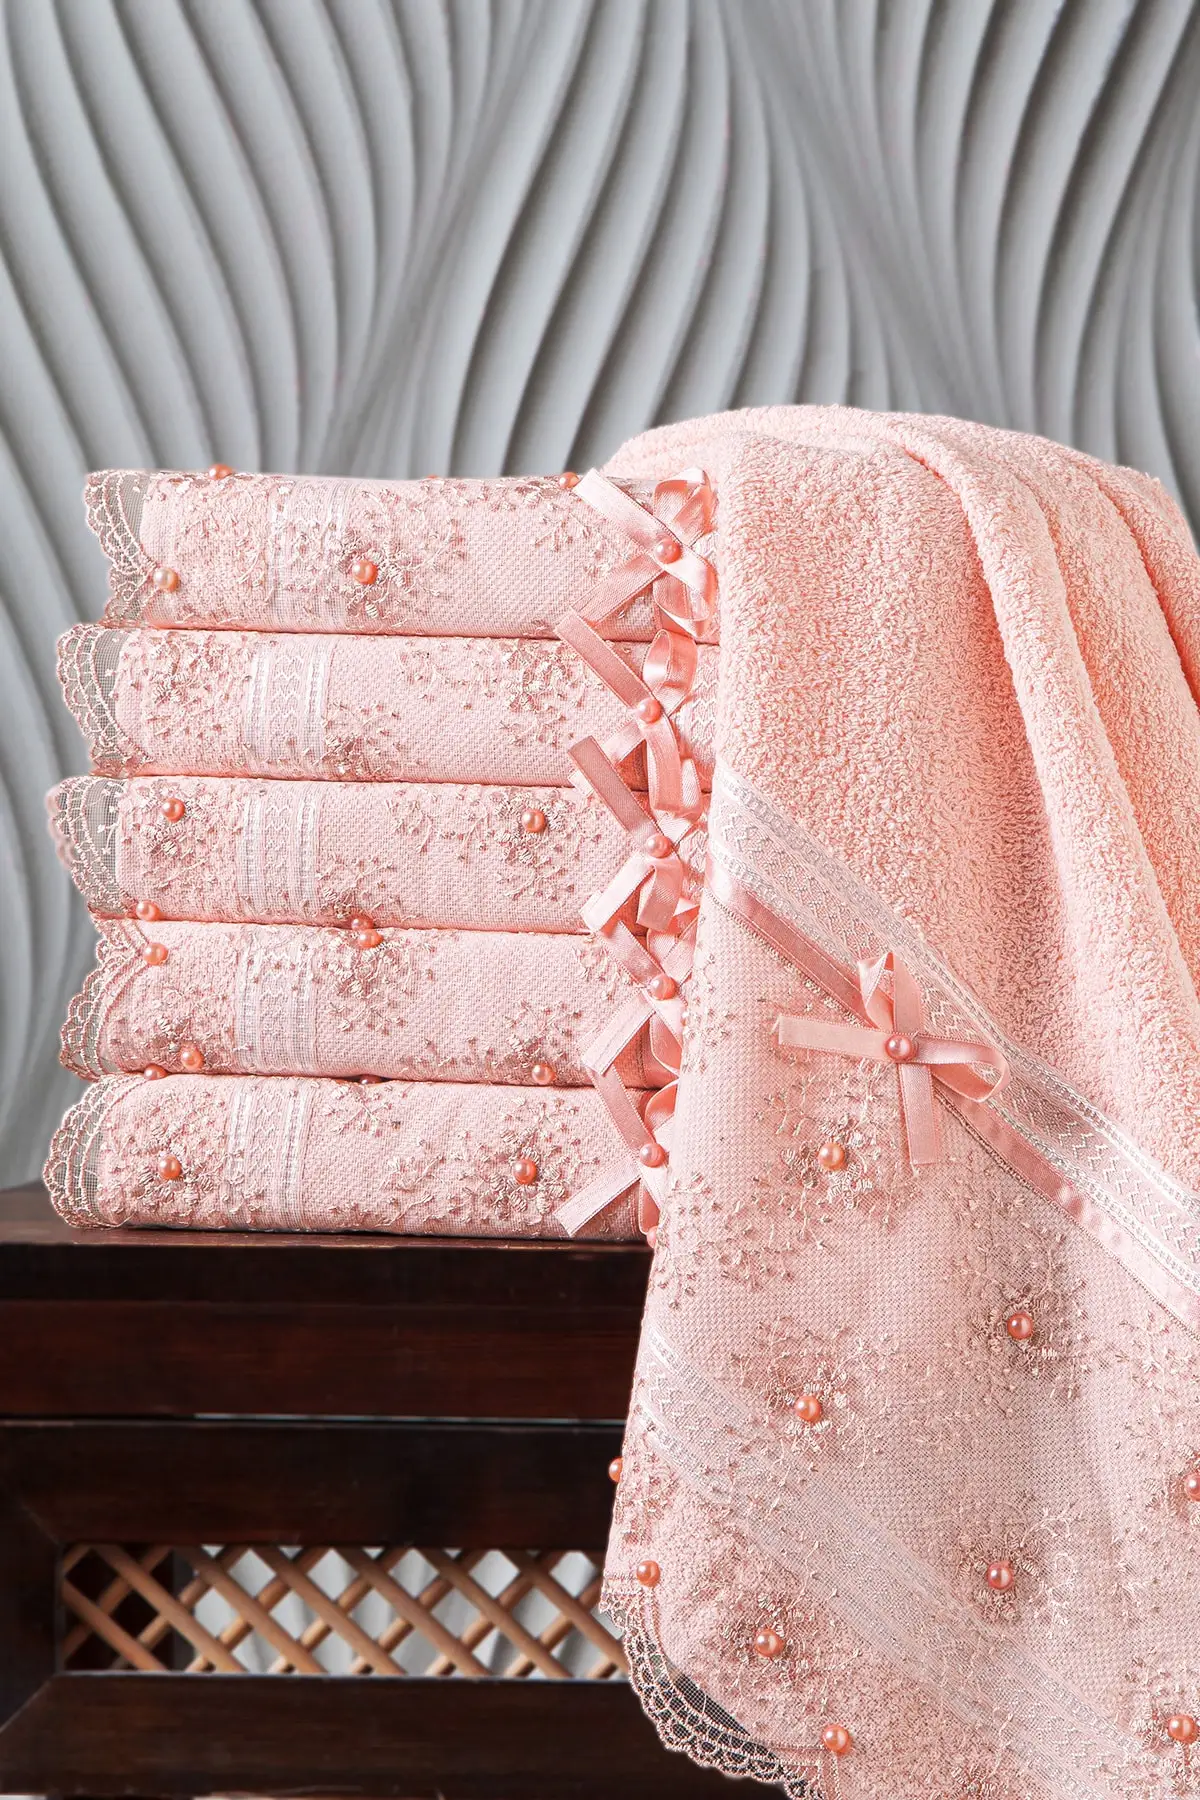 

WONDERFULSOFTTextile 100% хлопковая ткань с бисером Fabric 6 шт. полотенце 50x90 HS-BEAD Бесплатная доставка